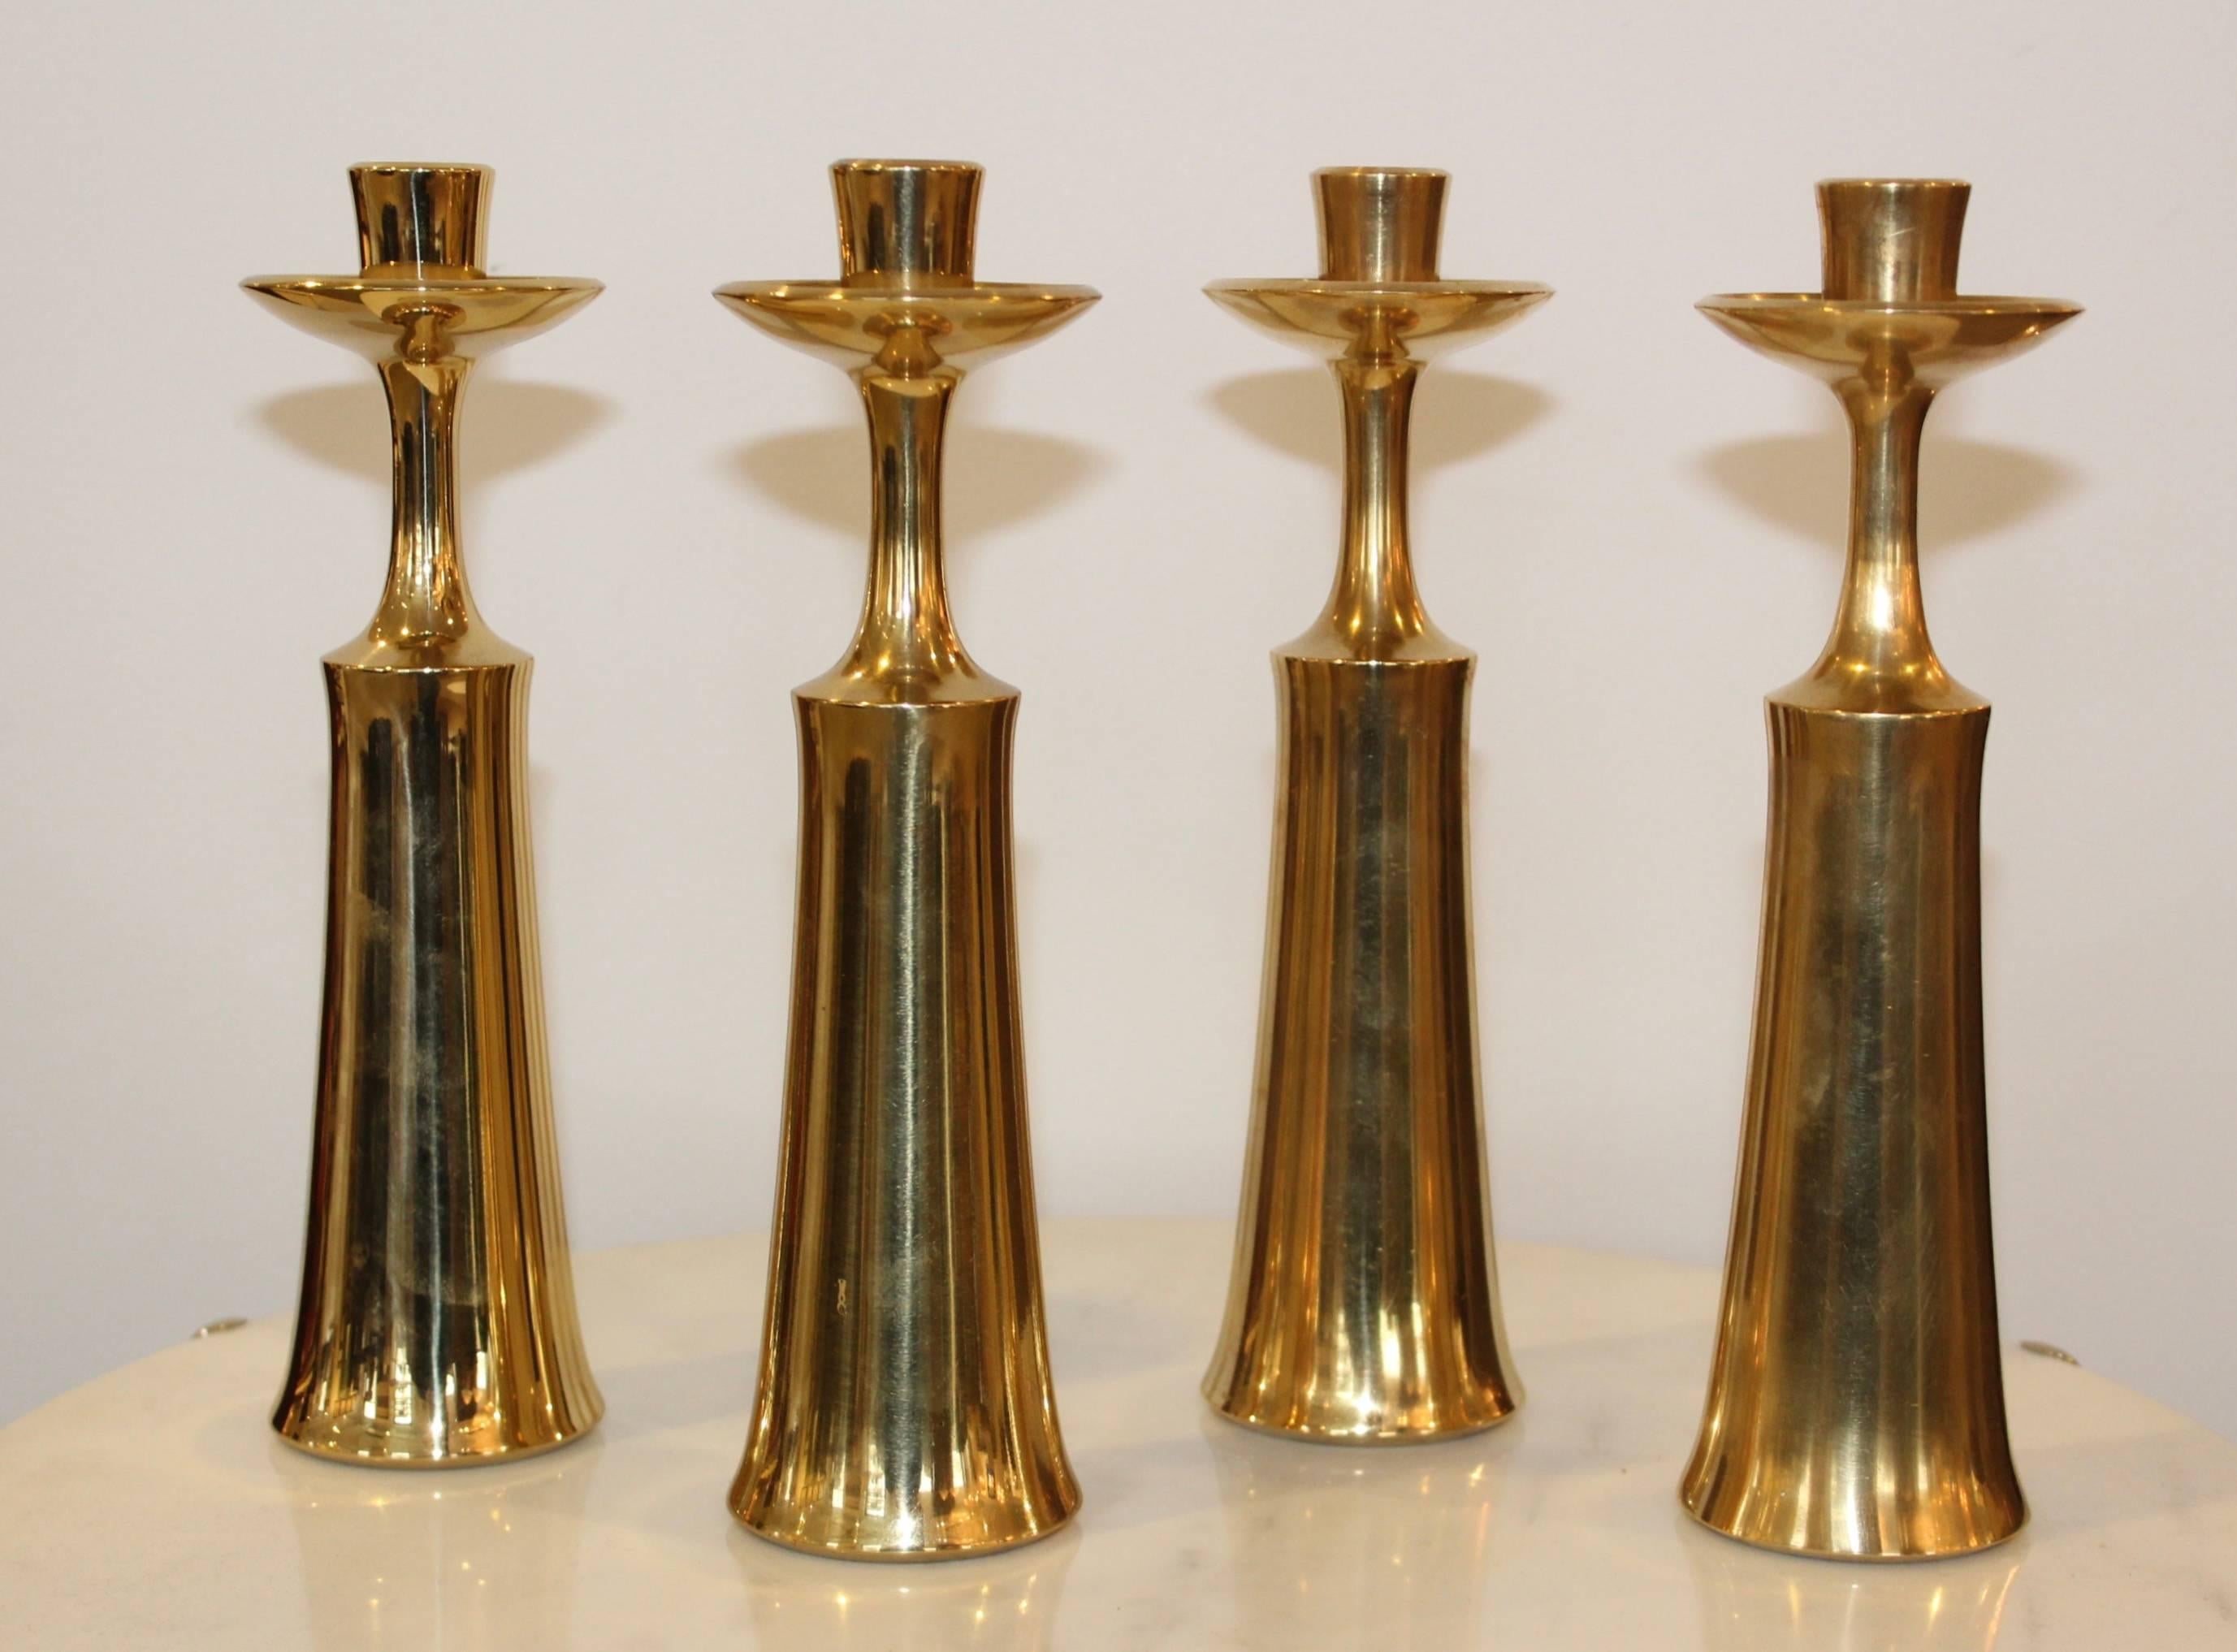 1950s Jens Quistgaard designed for Dansk brass candle holders set of four.